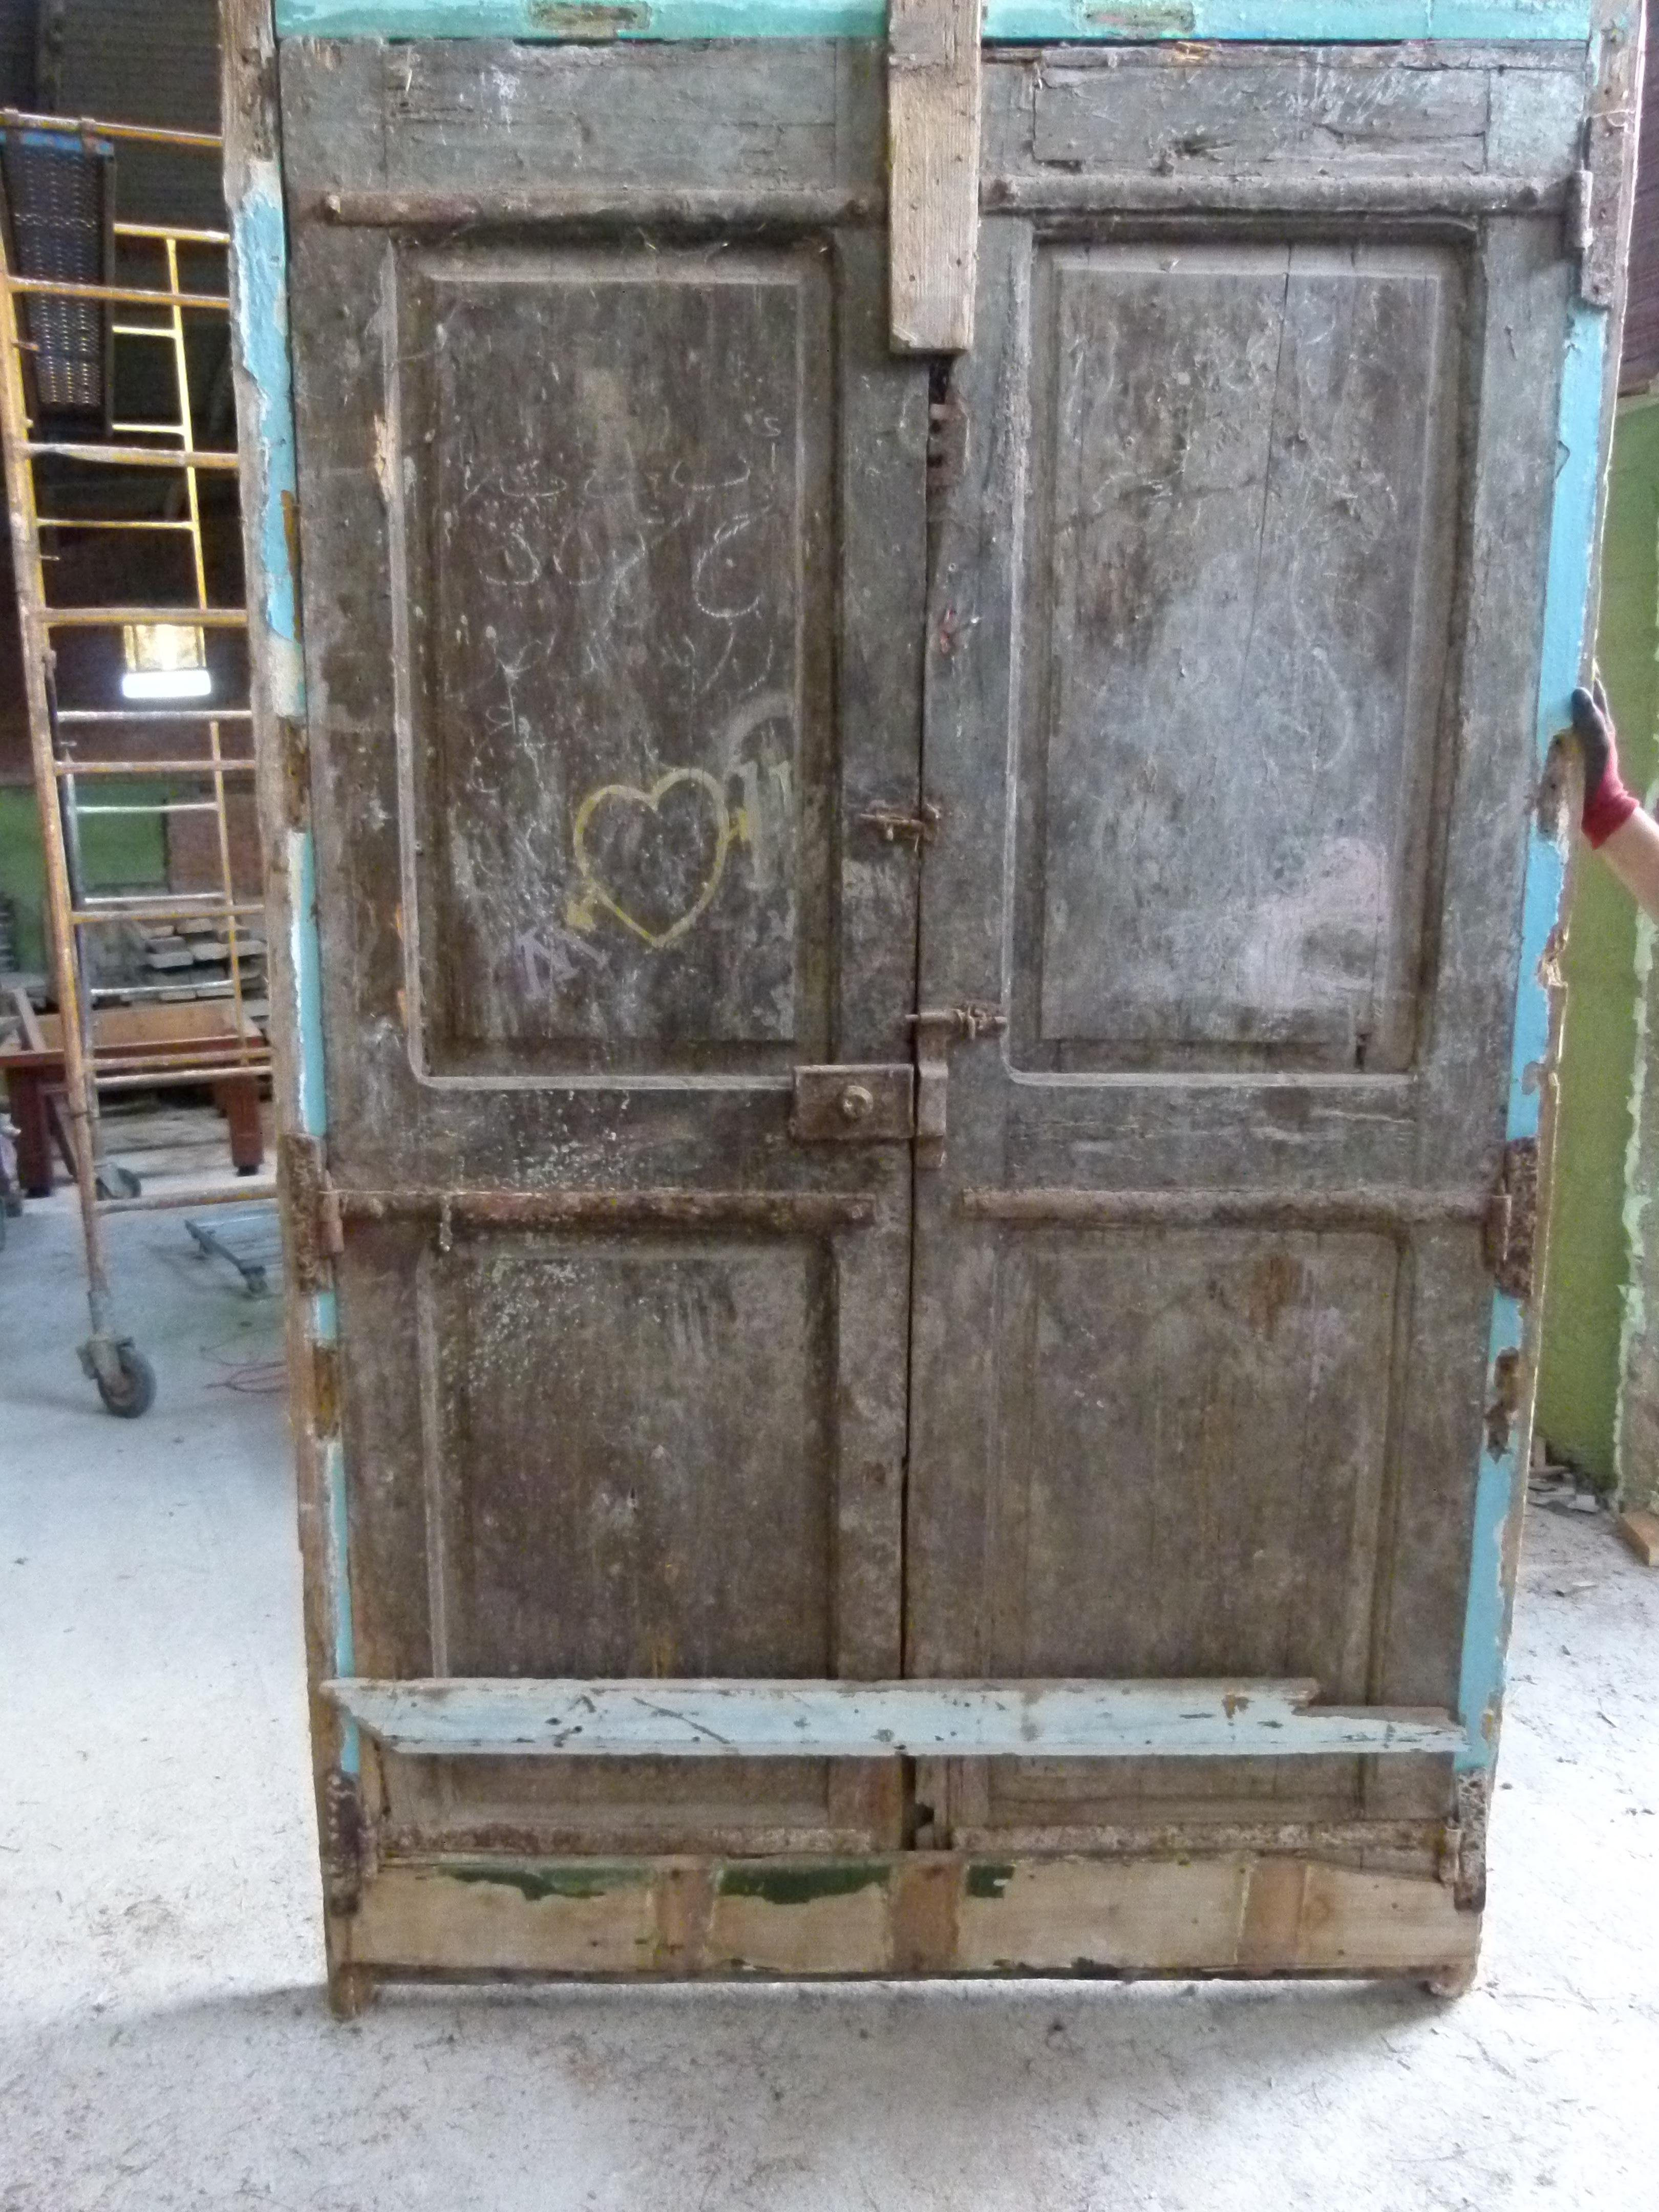 Doppelte Haustür aus dem 19. Jahrhundert mit Patina im Jugendstil aus Katalonien, Spanien.
Typische Holzschnitzereien aus dieser Zeit.
Die Tür ist eingerahmt und funktionsfähig, muss aber restauriert werden, da einige Teile beschädigt sind.
Die